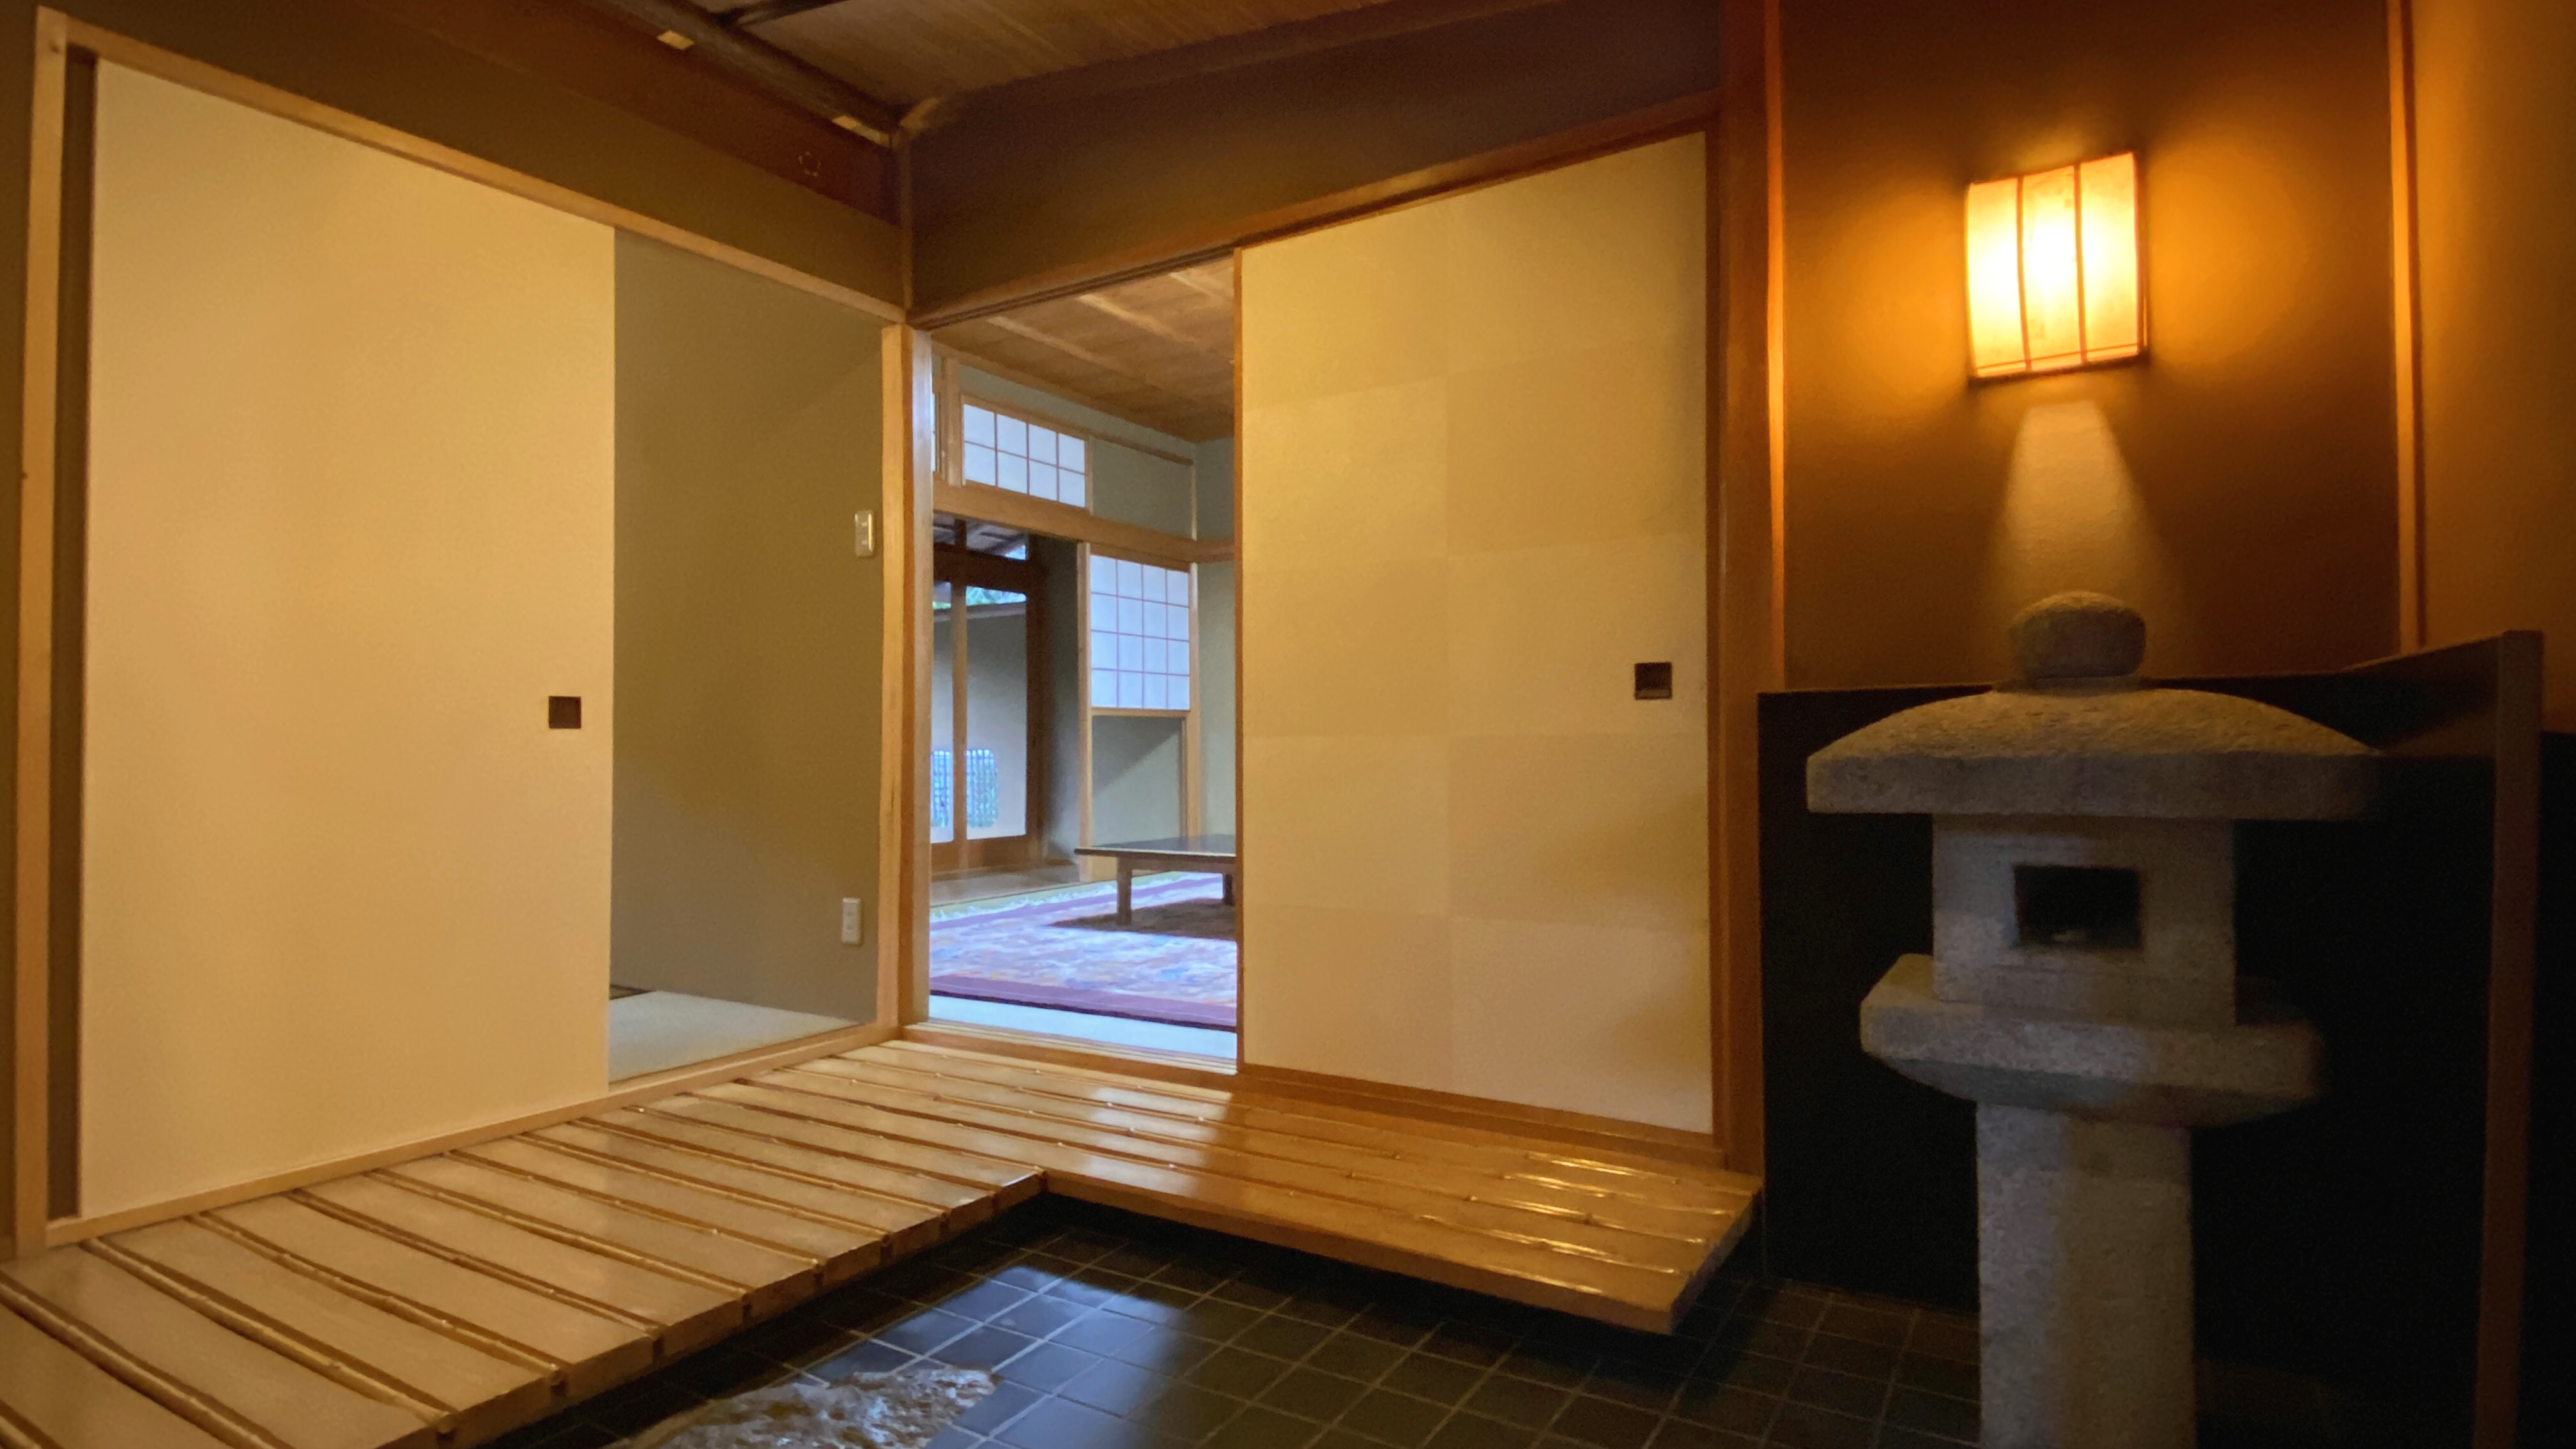 【特別客室うめ・はぎ】風情のある踏み込みと二間+トイレ付きのお部屋です。